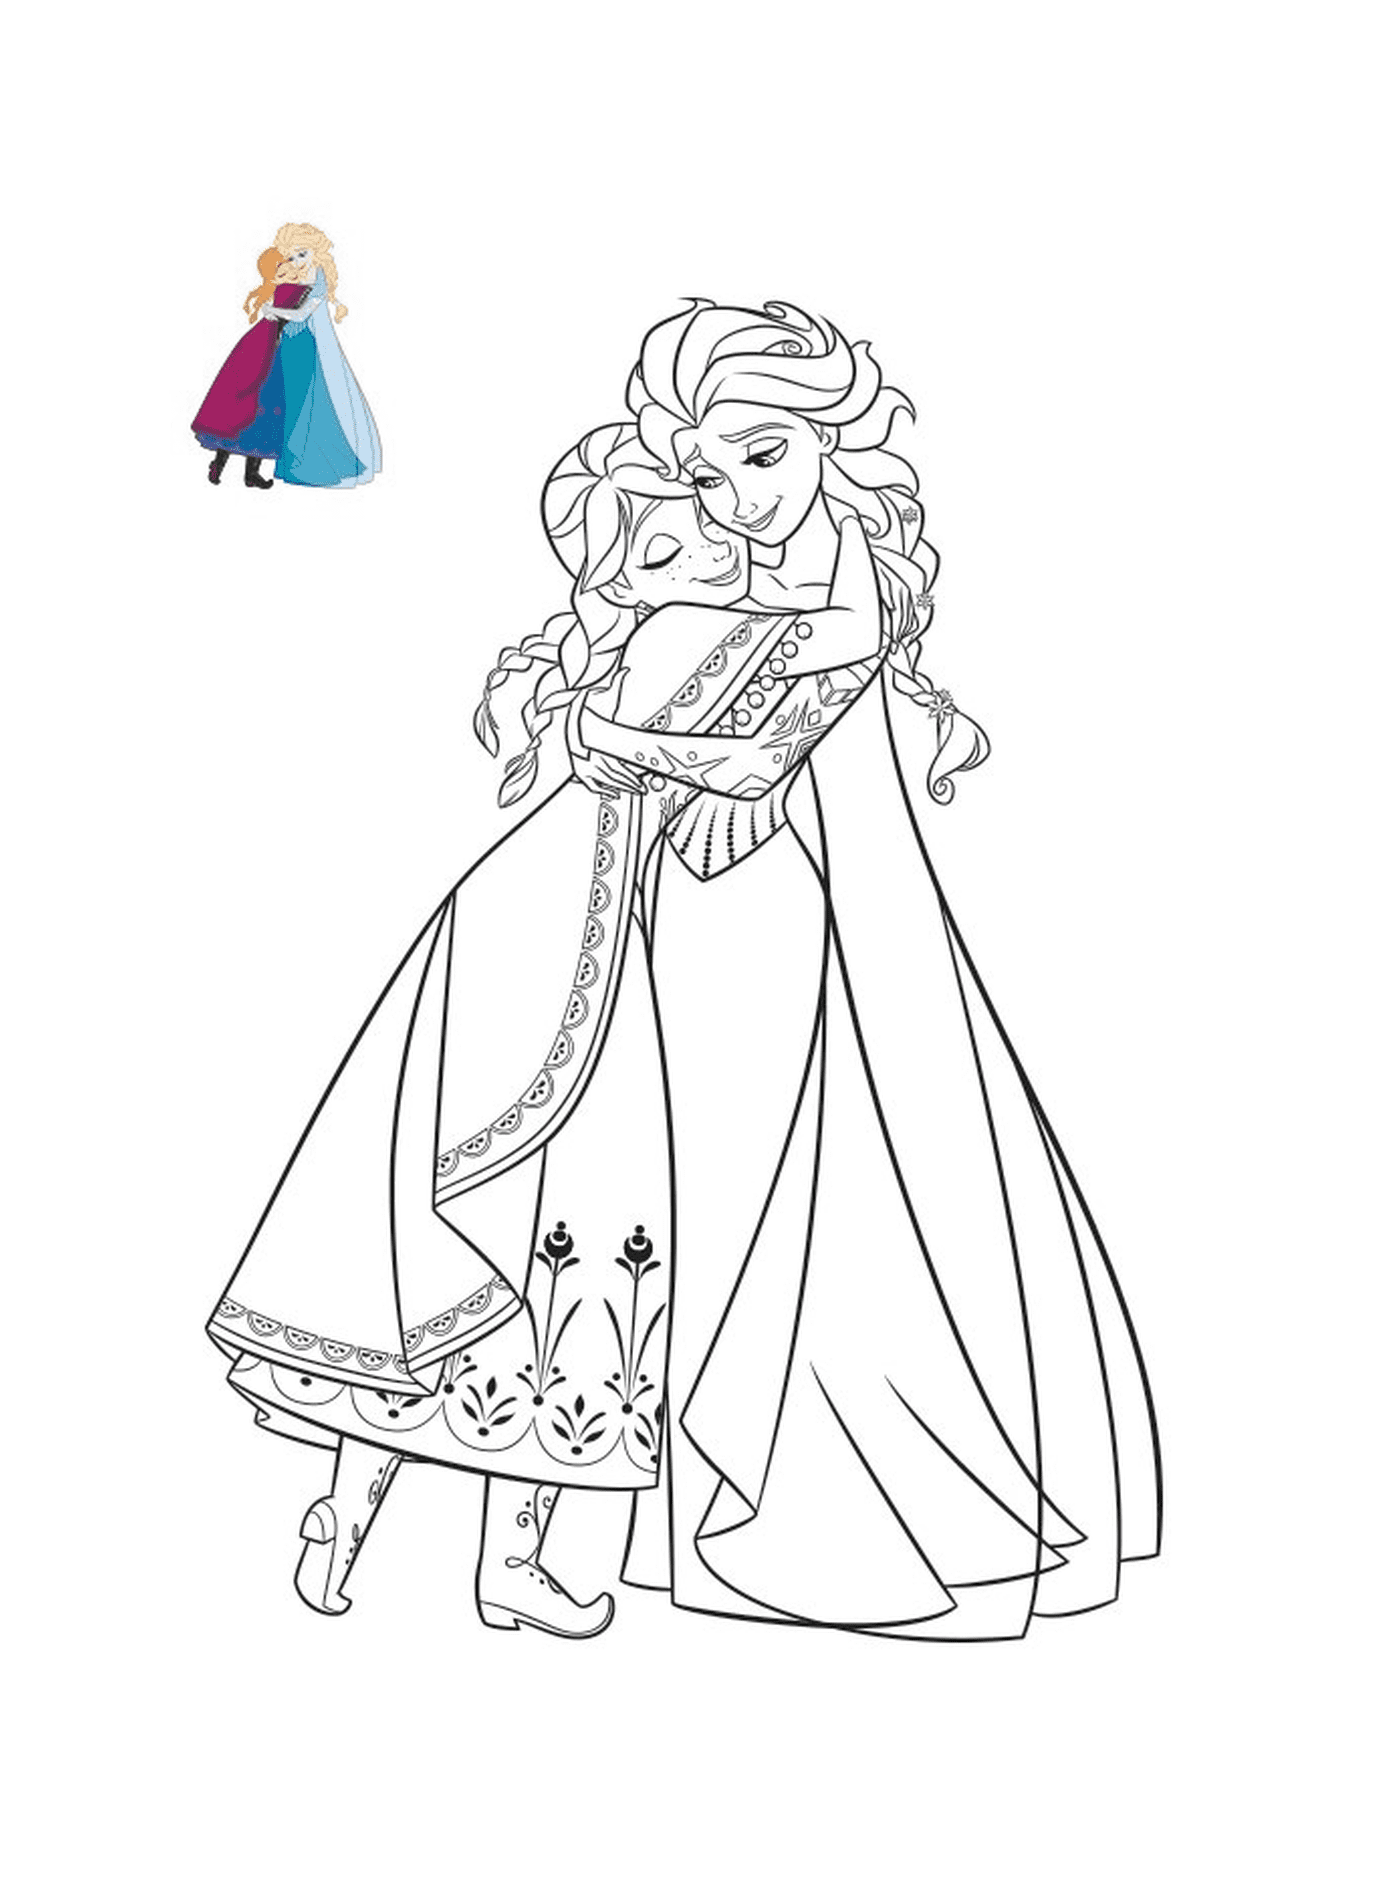   Anna donne un câlin pour réconforter sa grande sœur Elsa 